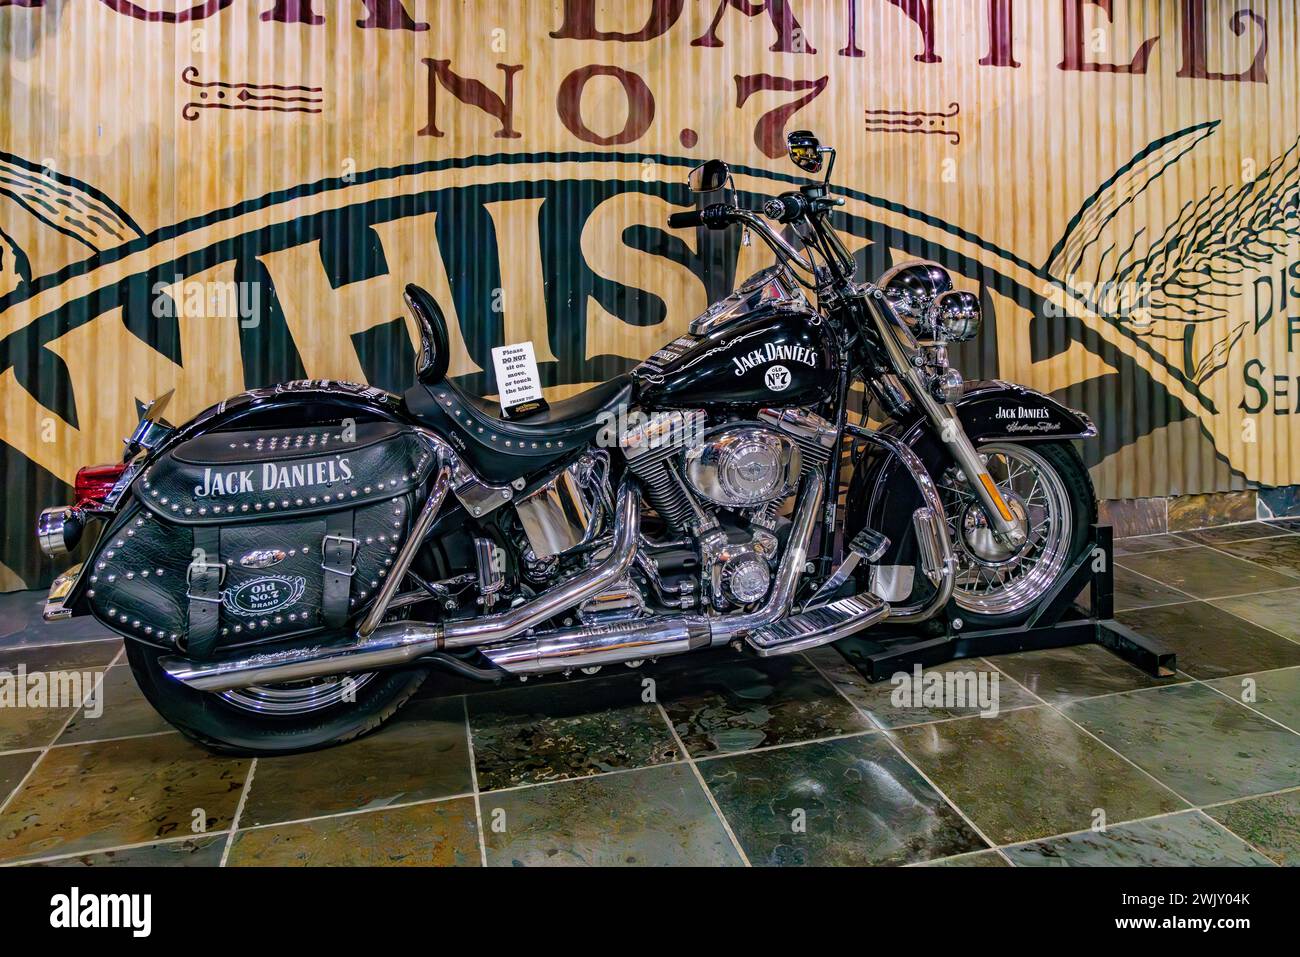 La motocicletta Harley Davidson a tema di Jack Daniel in mostra nel museo della distilleria Jack Daniel a Lynchburg, Tennessee Foto Stock